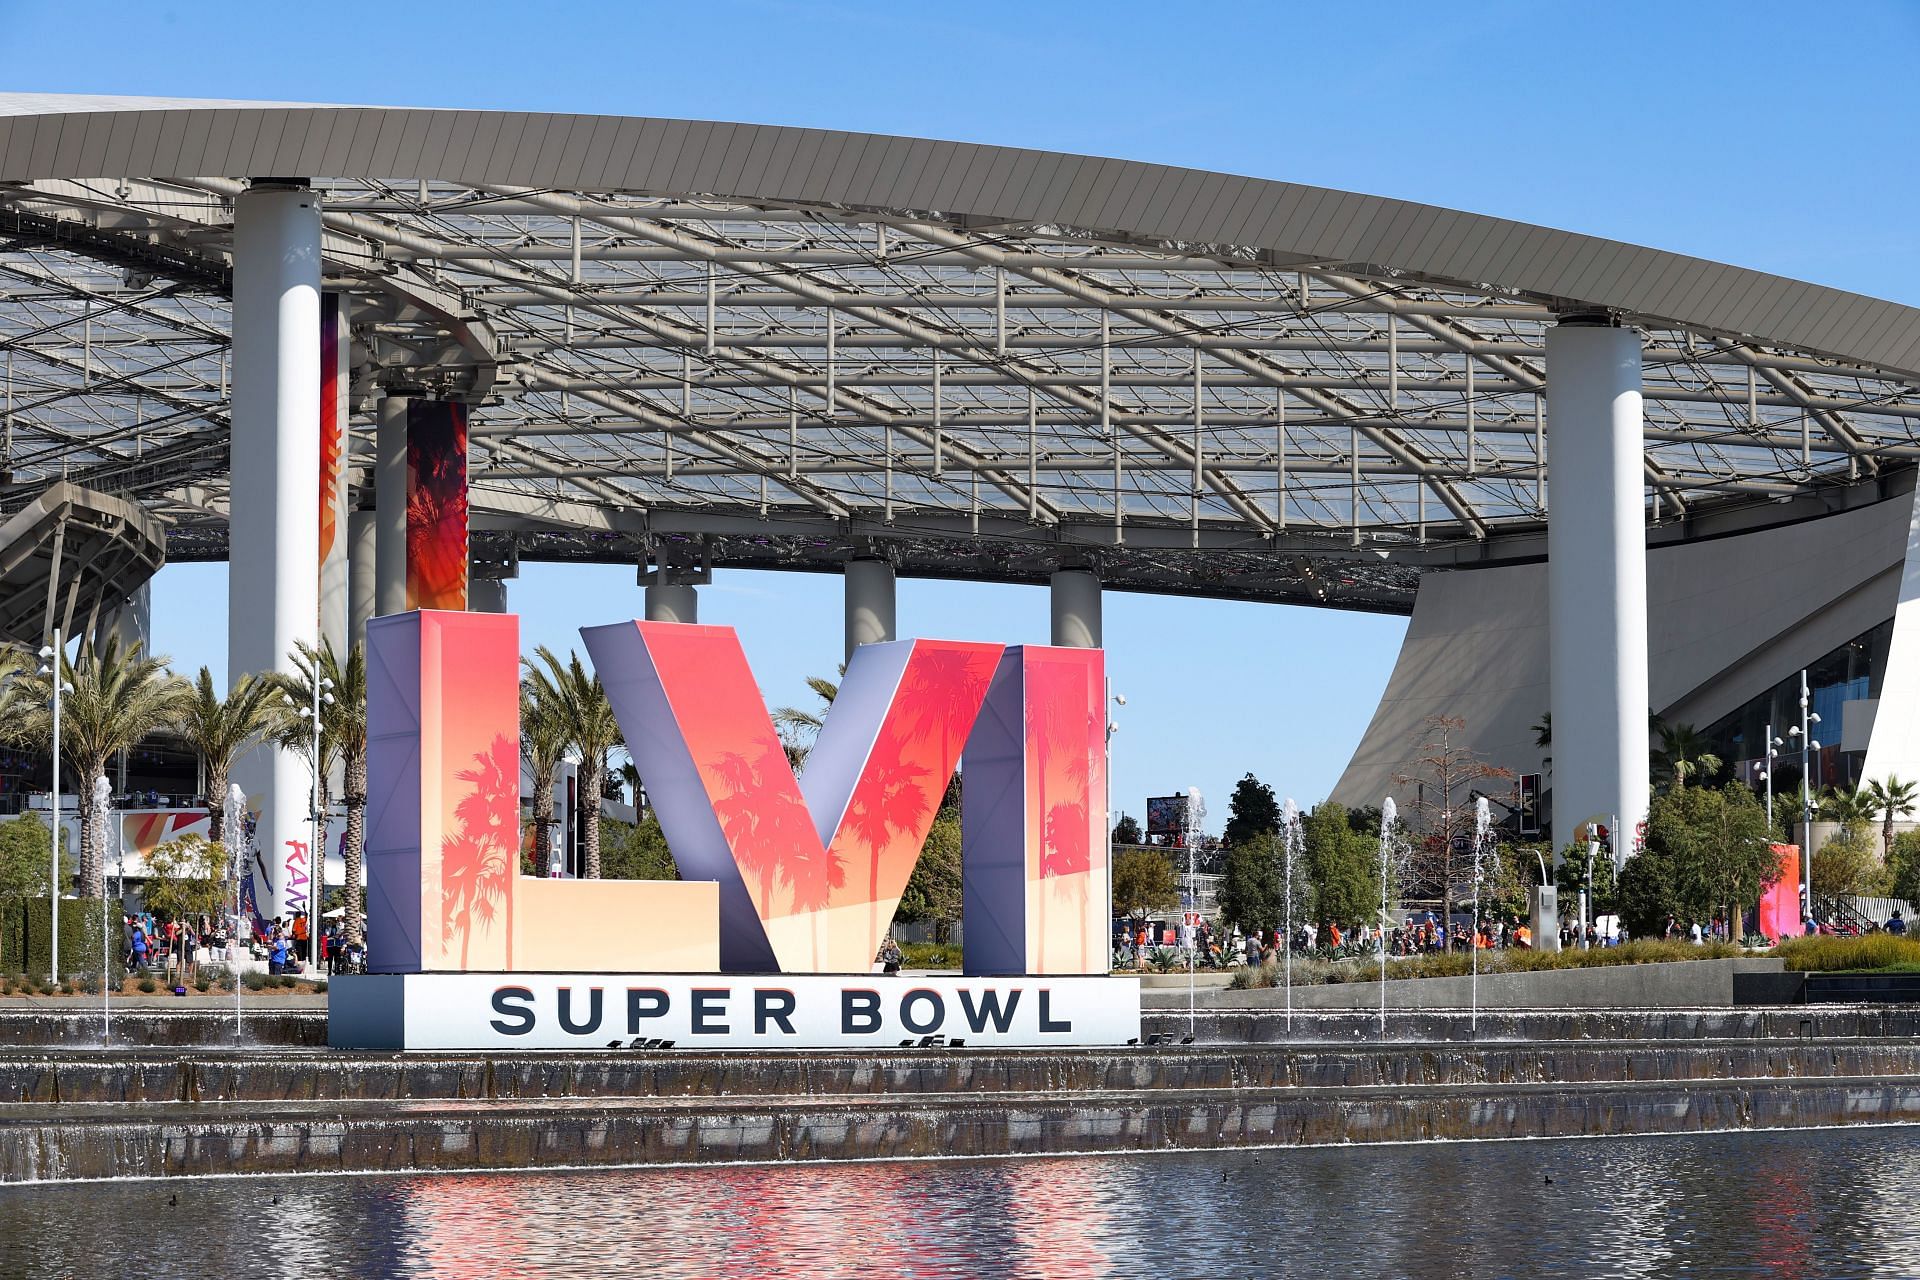 Super Bowl LVI at SoFi stadium in Los Angeles